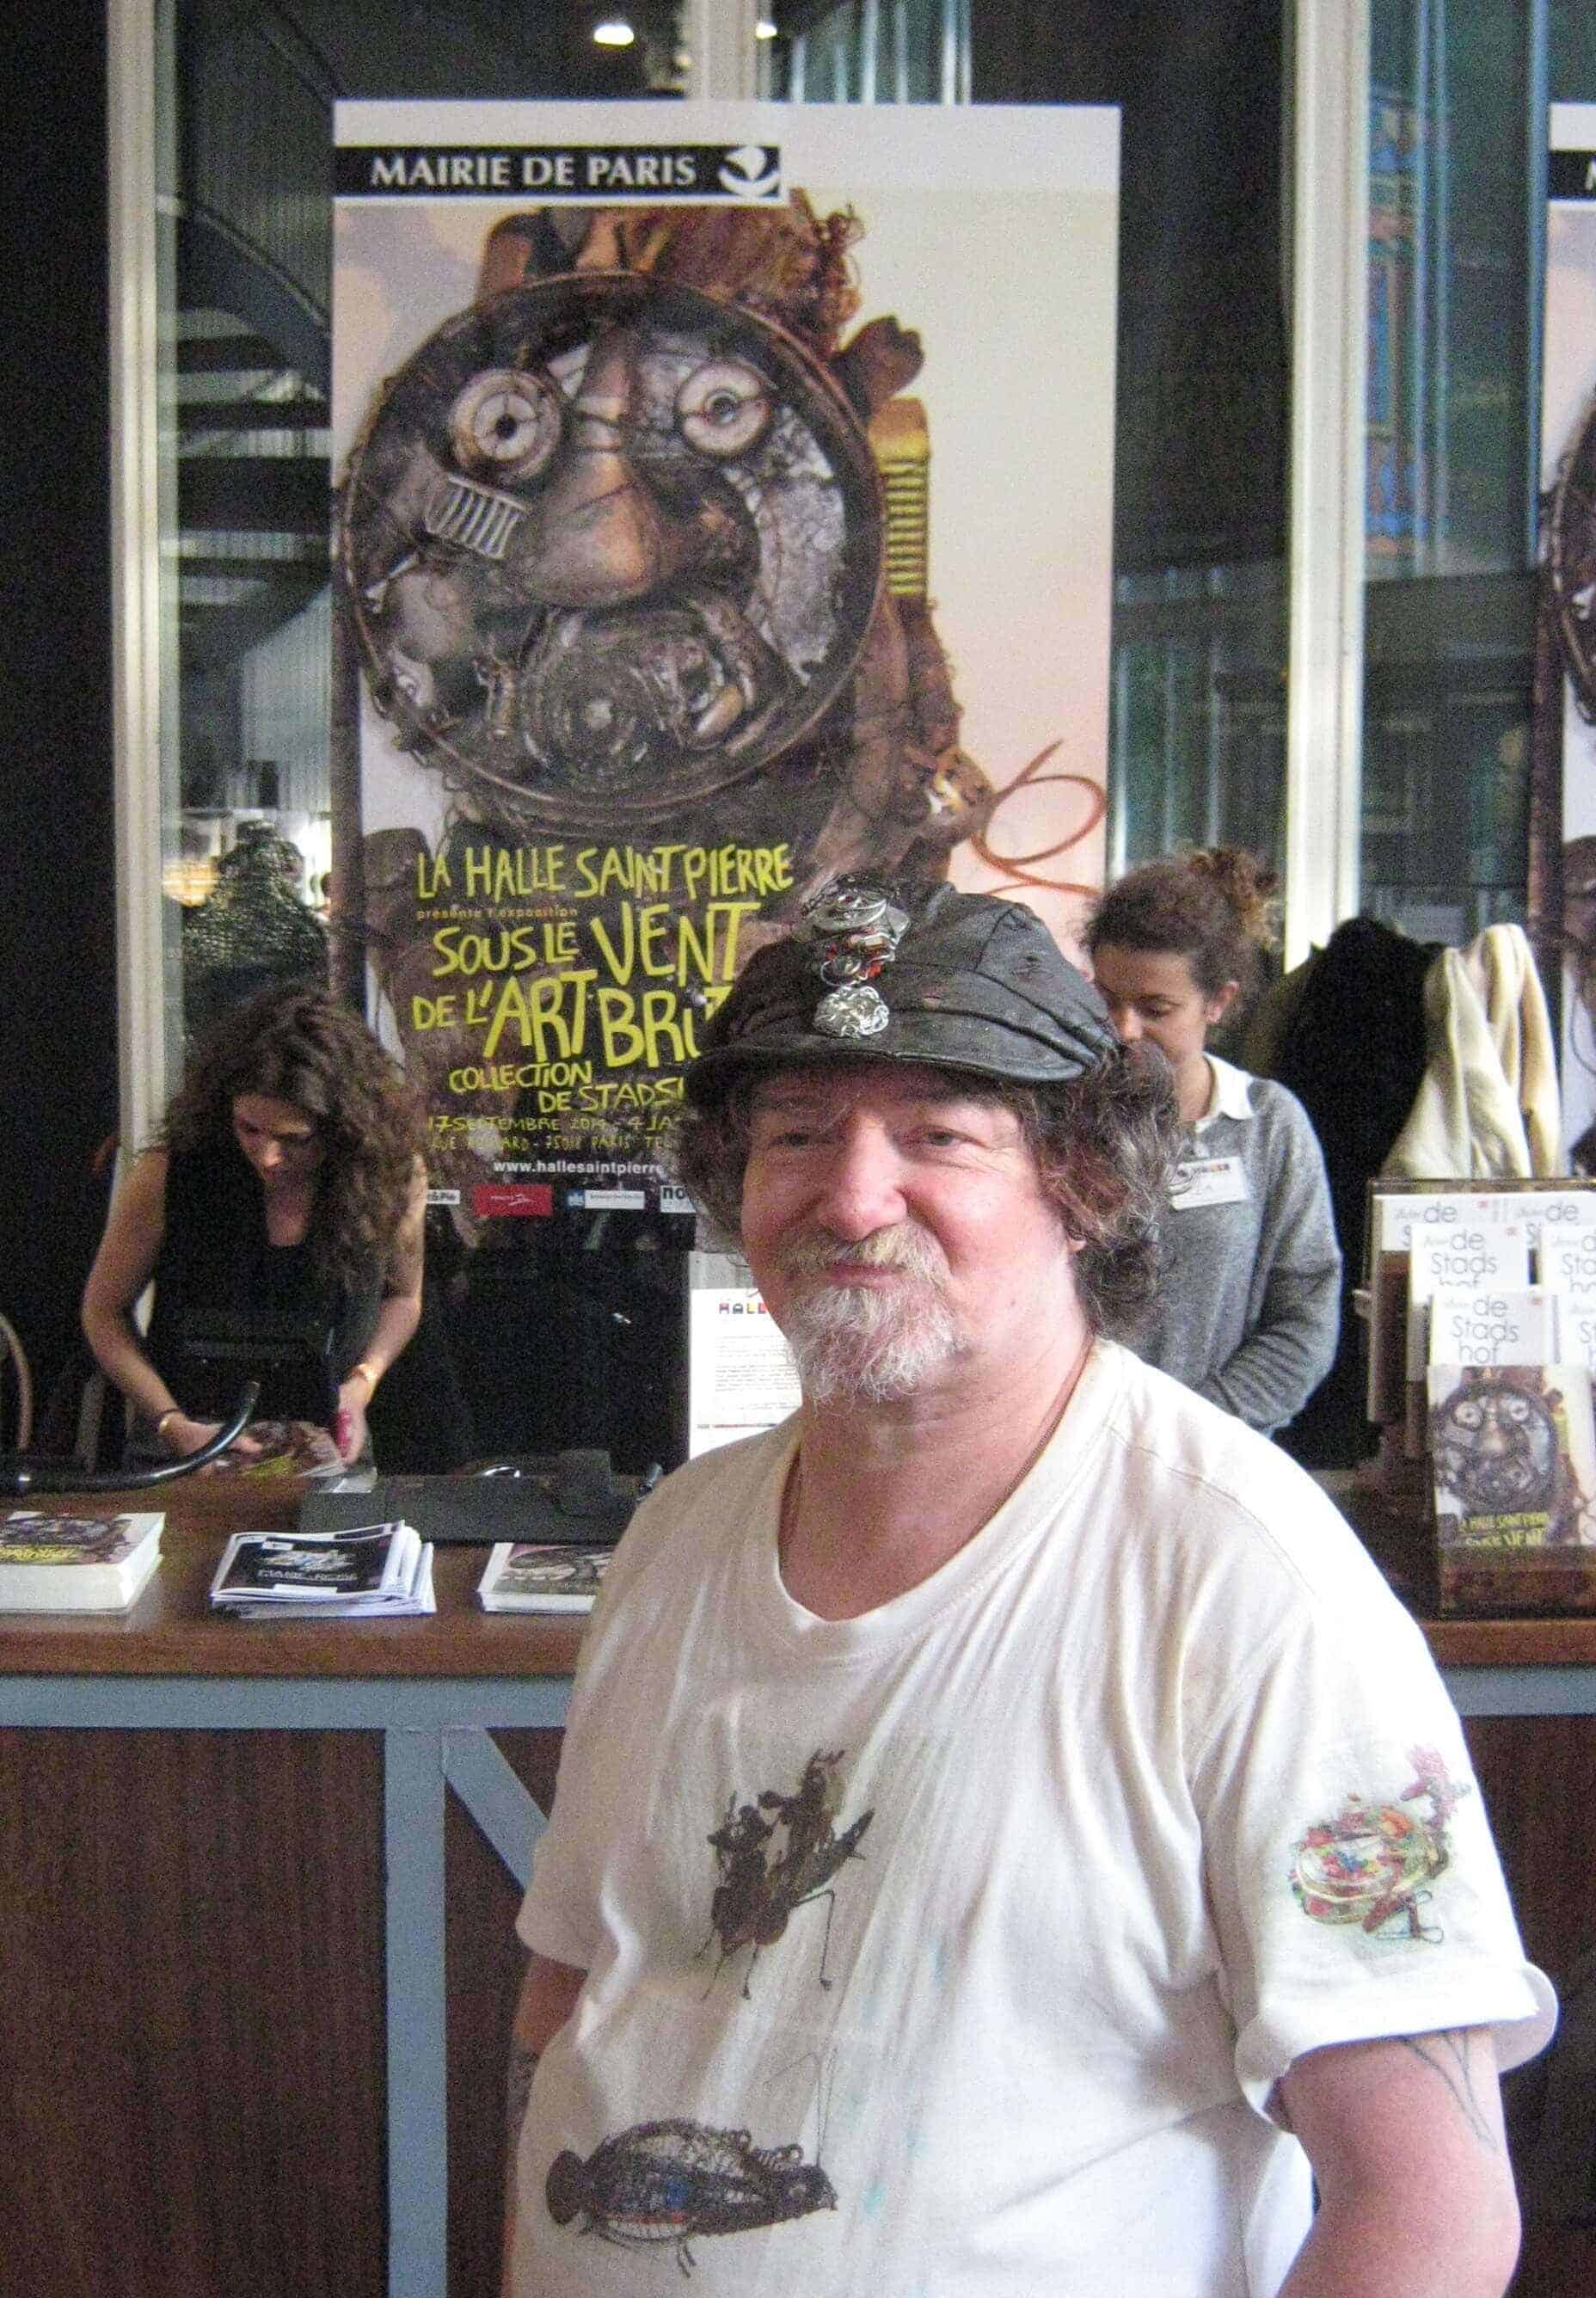 Outsider Künstler Markus Meurer am 16.9.2014 in der Halle Saint-Pierre, Paris